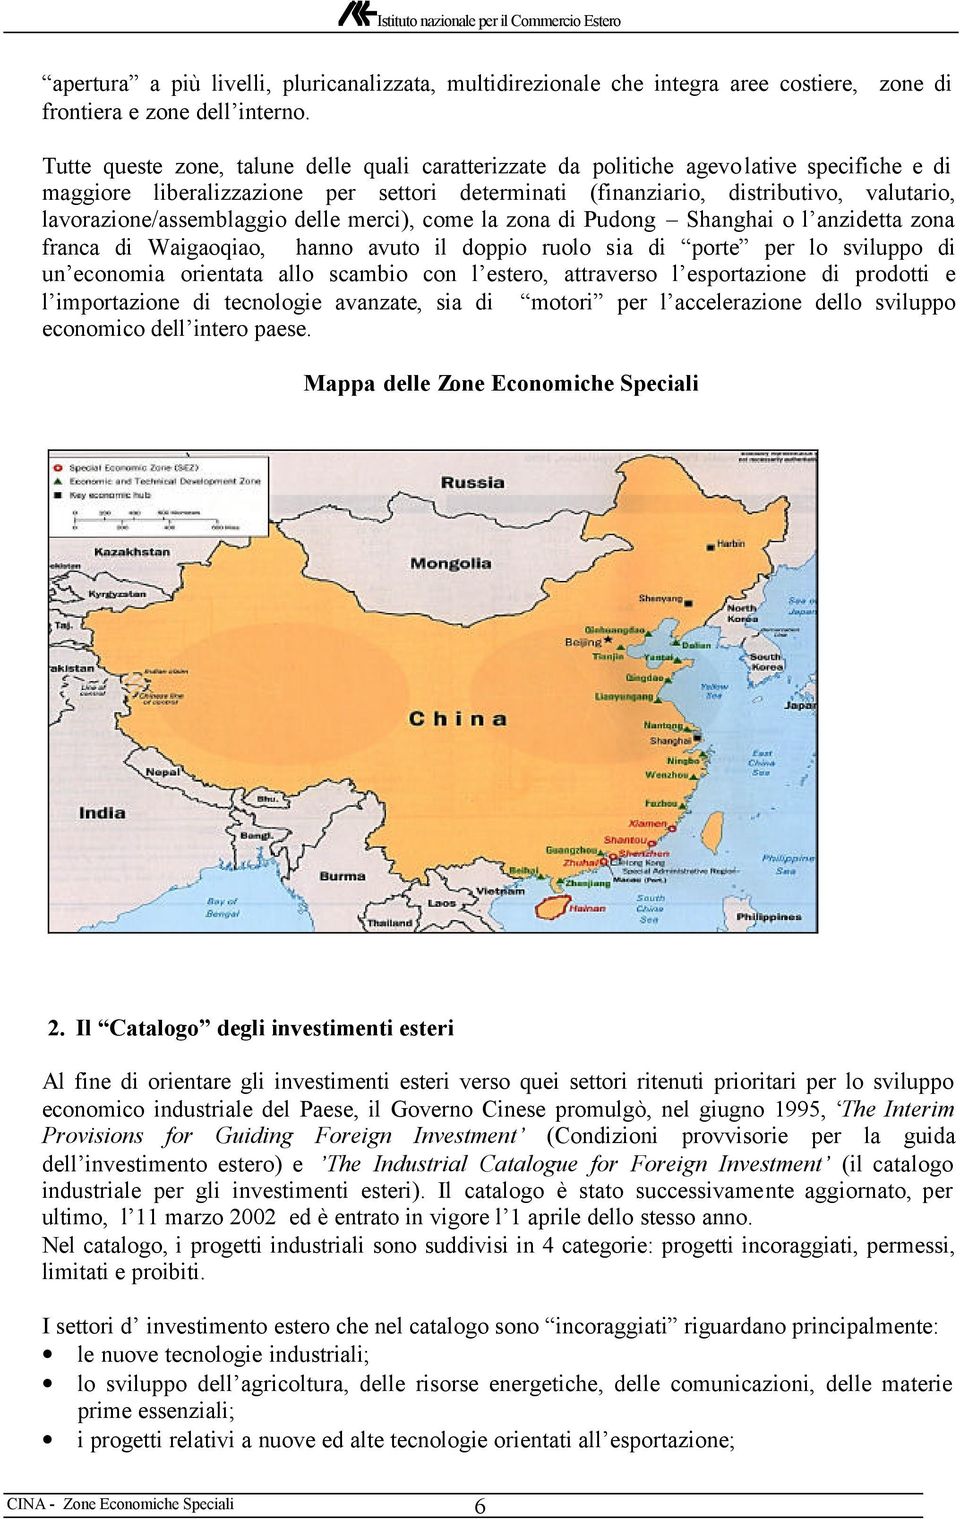 lavorazione/assemblaggio delle merci), come la zona di Pudong Shanghai o l anzidetta zona franca di Waigaoqiao, hanno avuto il doppio ruolo sia di porte per lo sviluppo di un economia orientata allo